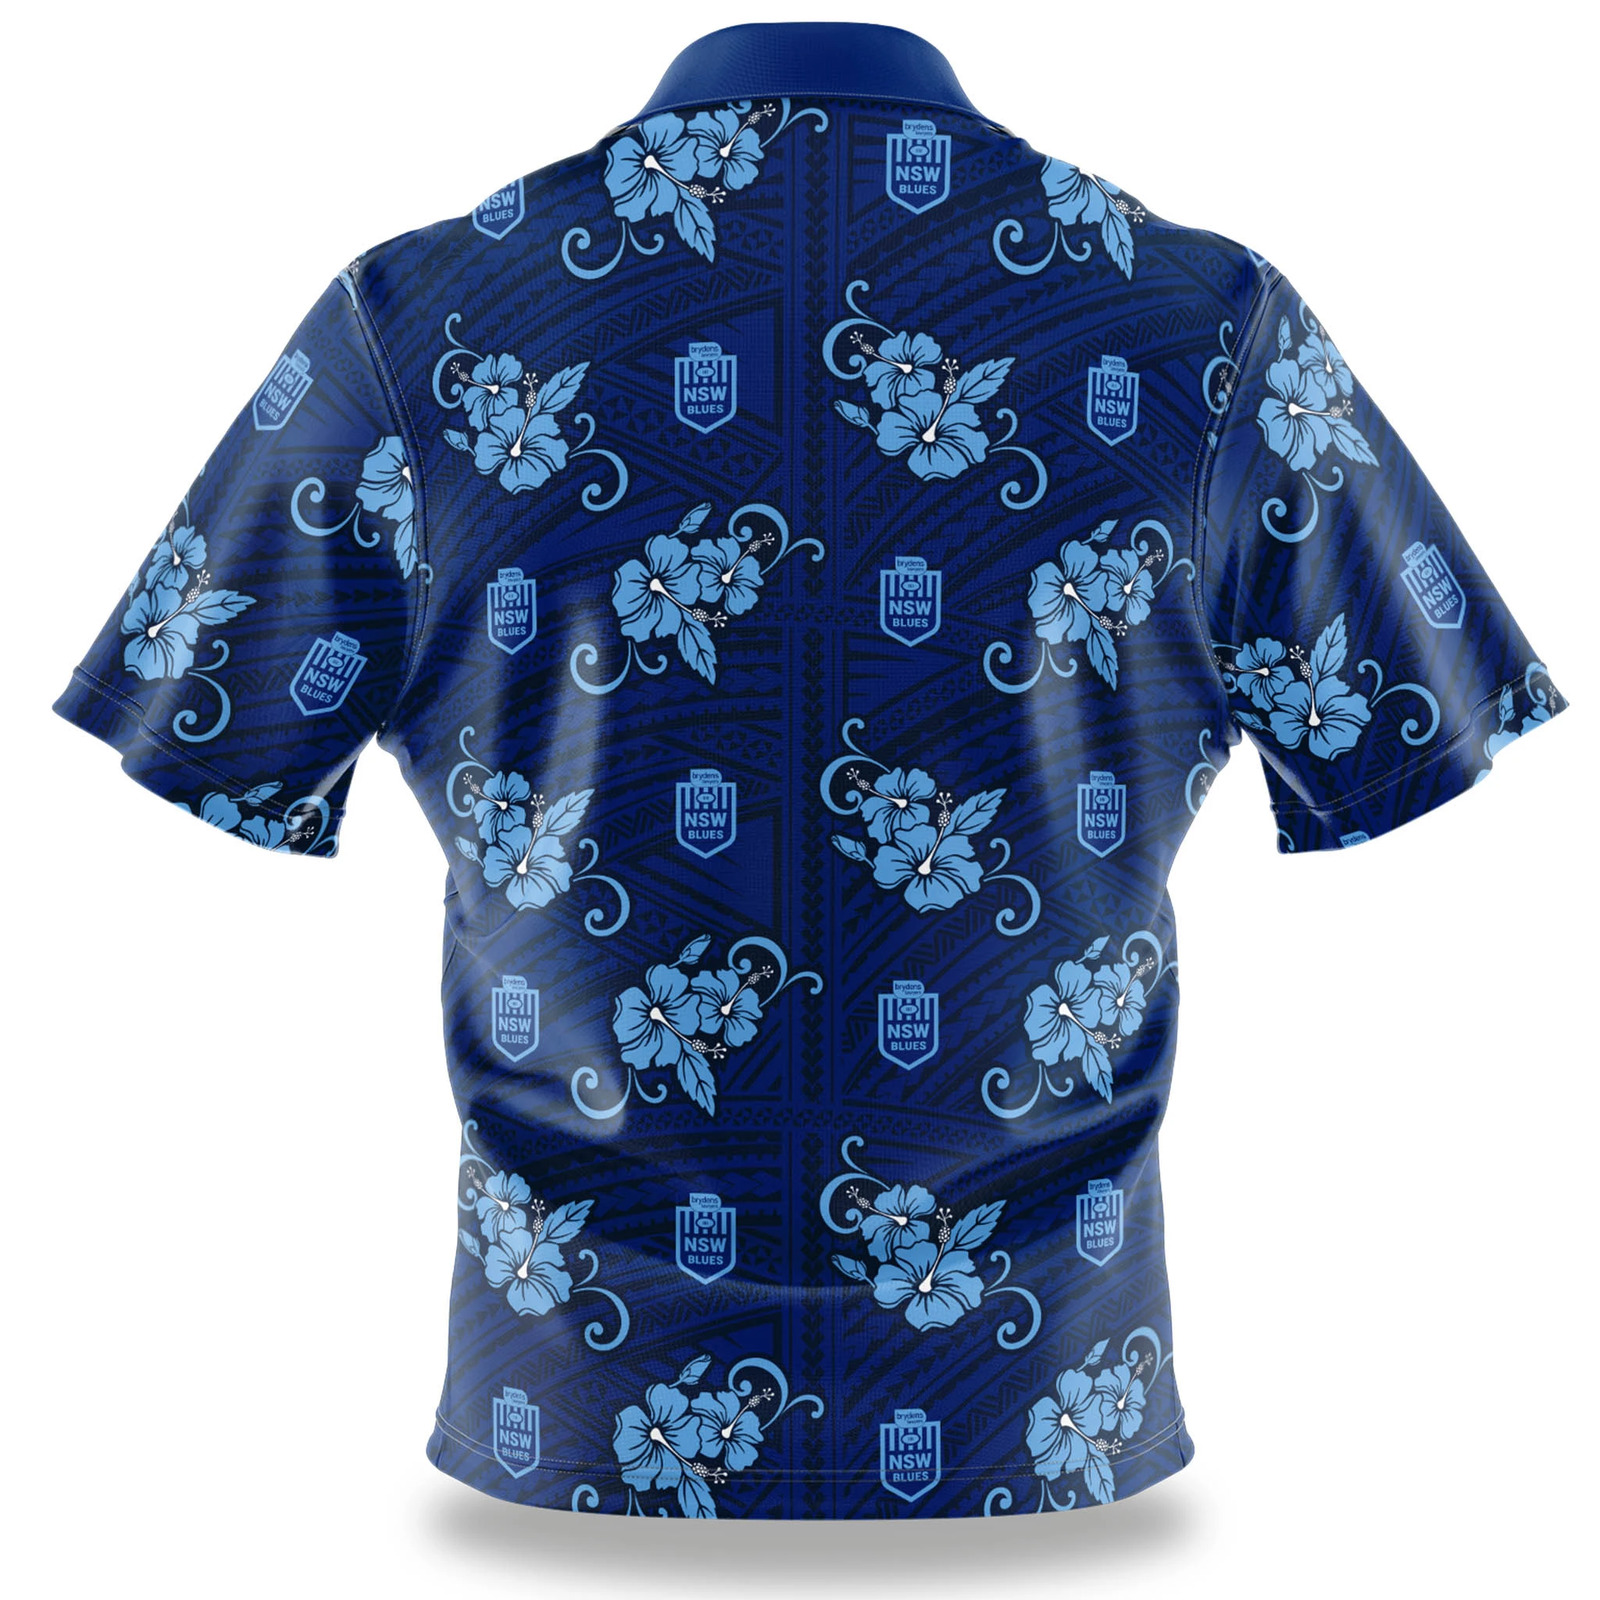 Parramatta Eels NRL 2021 Tribal Hawaiian Shirt Button Up Polo Shirt Sizes S-5XL! 